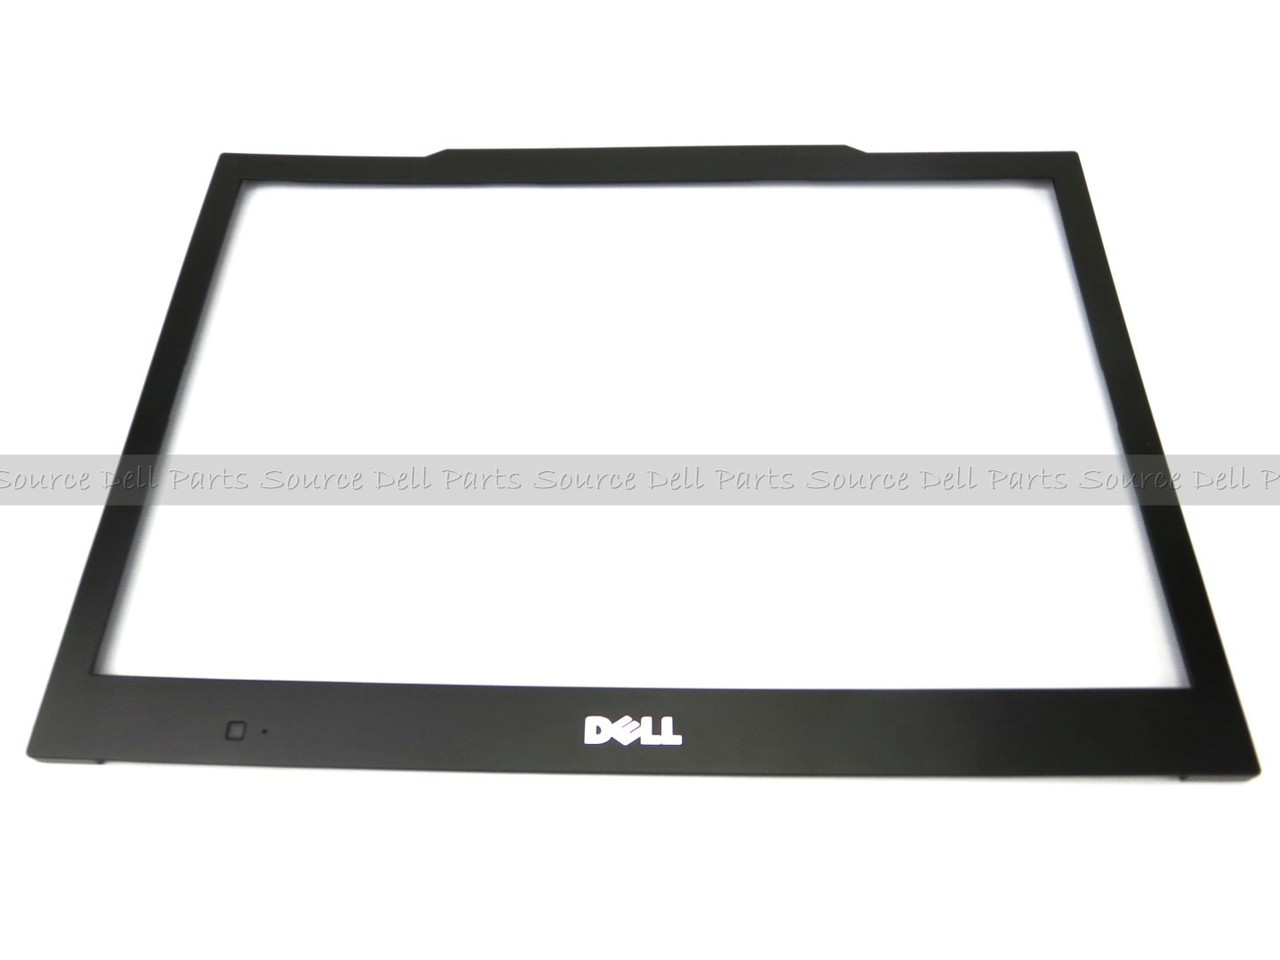 Dell Latitude E4300 LCD Front Trim Bezel with WWAN Bump No Camera Window - M666D